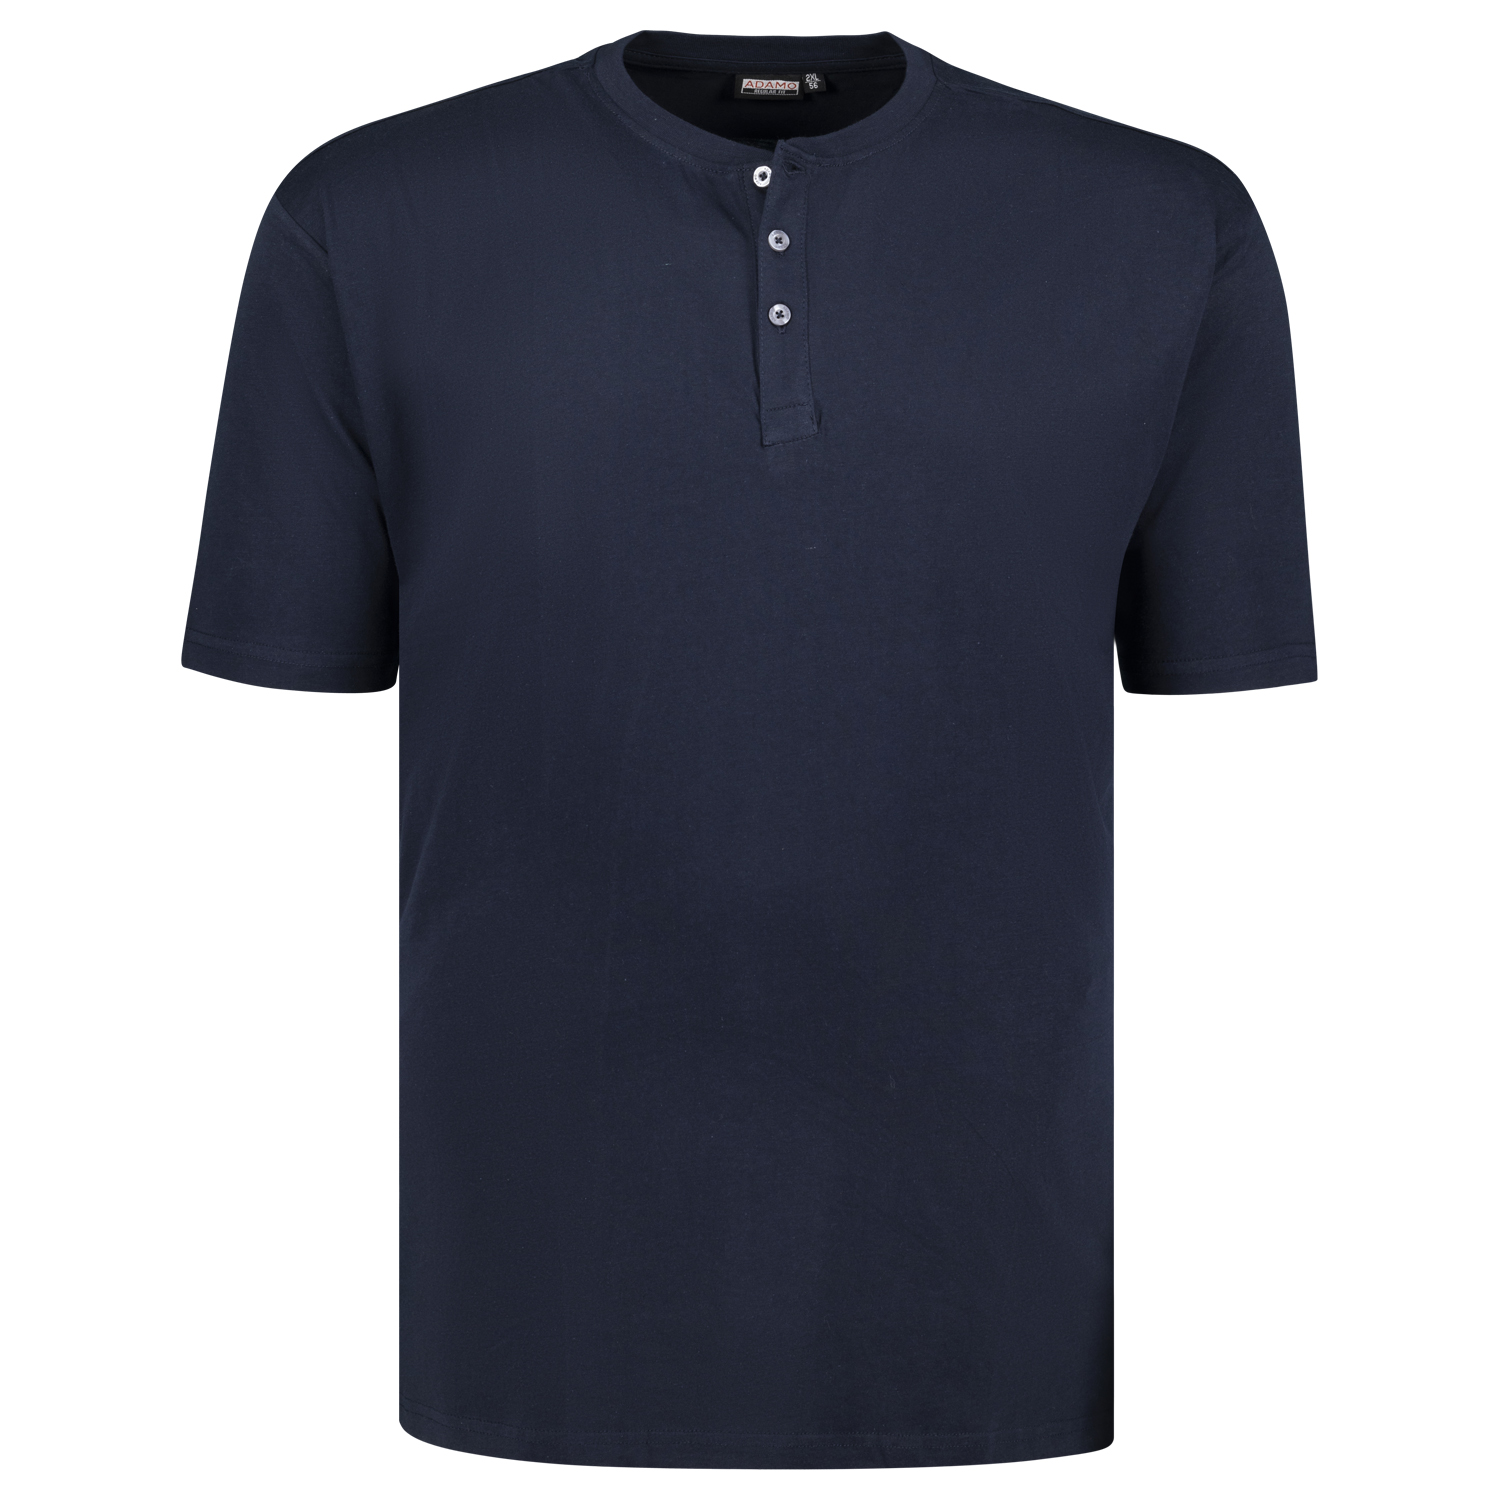 T-shirt série SILAS by ADAMO jusqu'à la grande taille 10XL - couleur: bleu marine